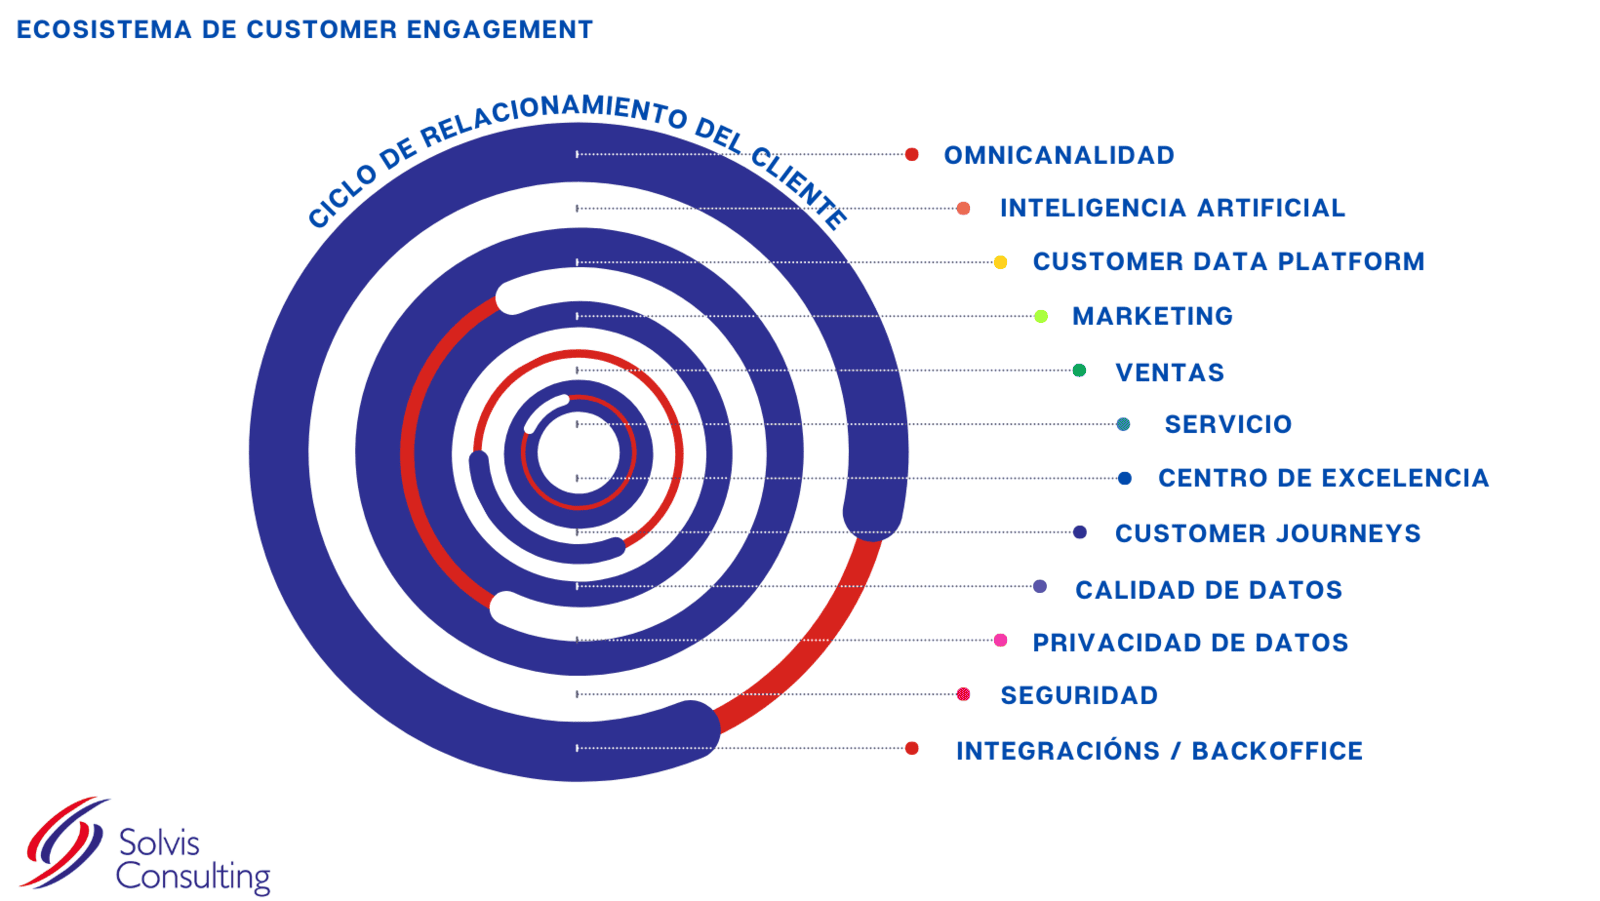 Ecosistema de CRM CX Customer Engagement